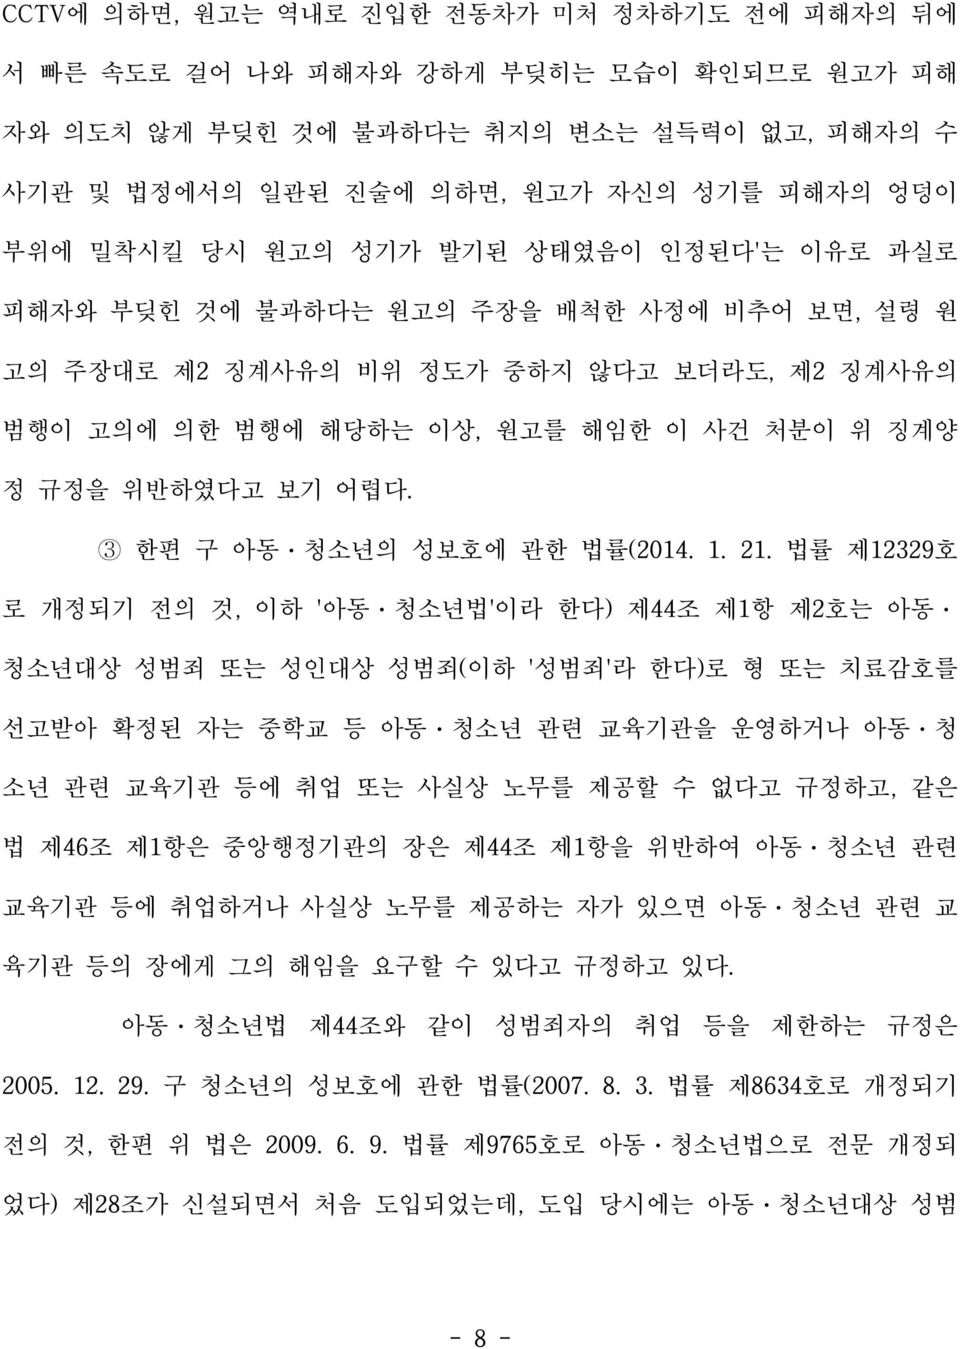 3 한편 구 아동ㆍ청소년의 성보호에 관한 법률(2014. 1. 21.